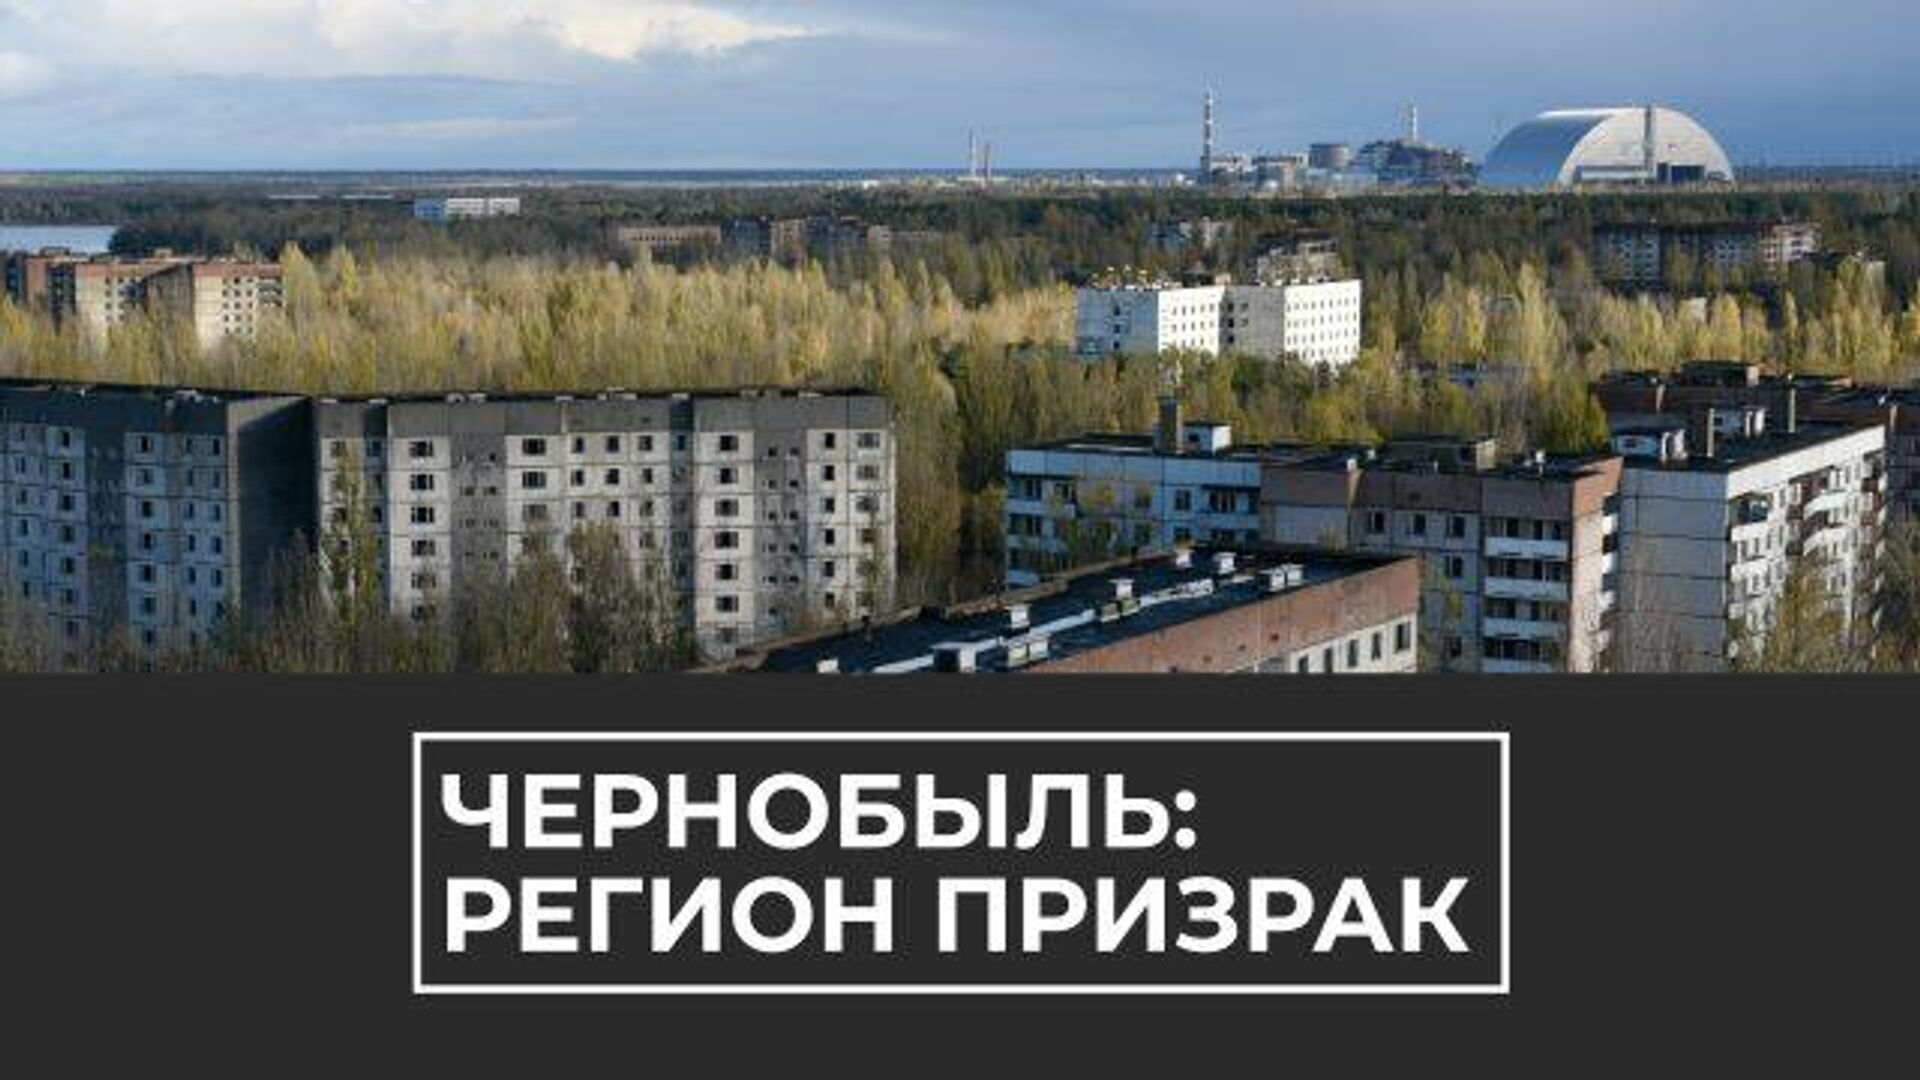 Чернобыль 34 года спустя: эхо крупнейшей техногенной катастрофы ХХ века - РИА Новости, 1920, 26.04.2020